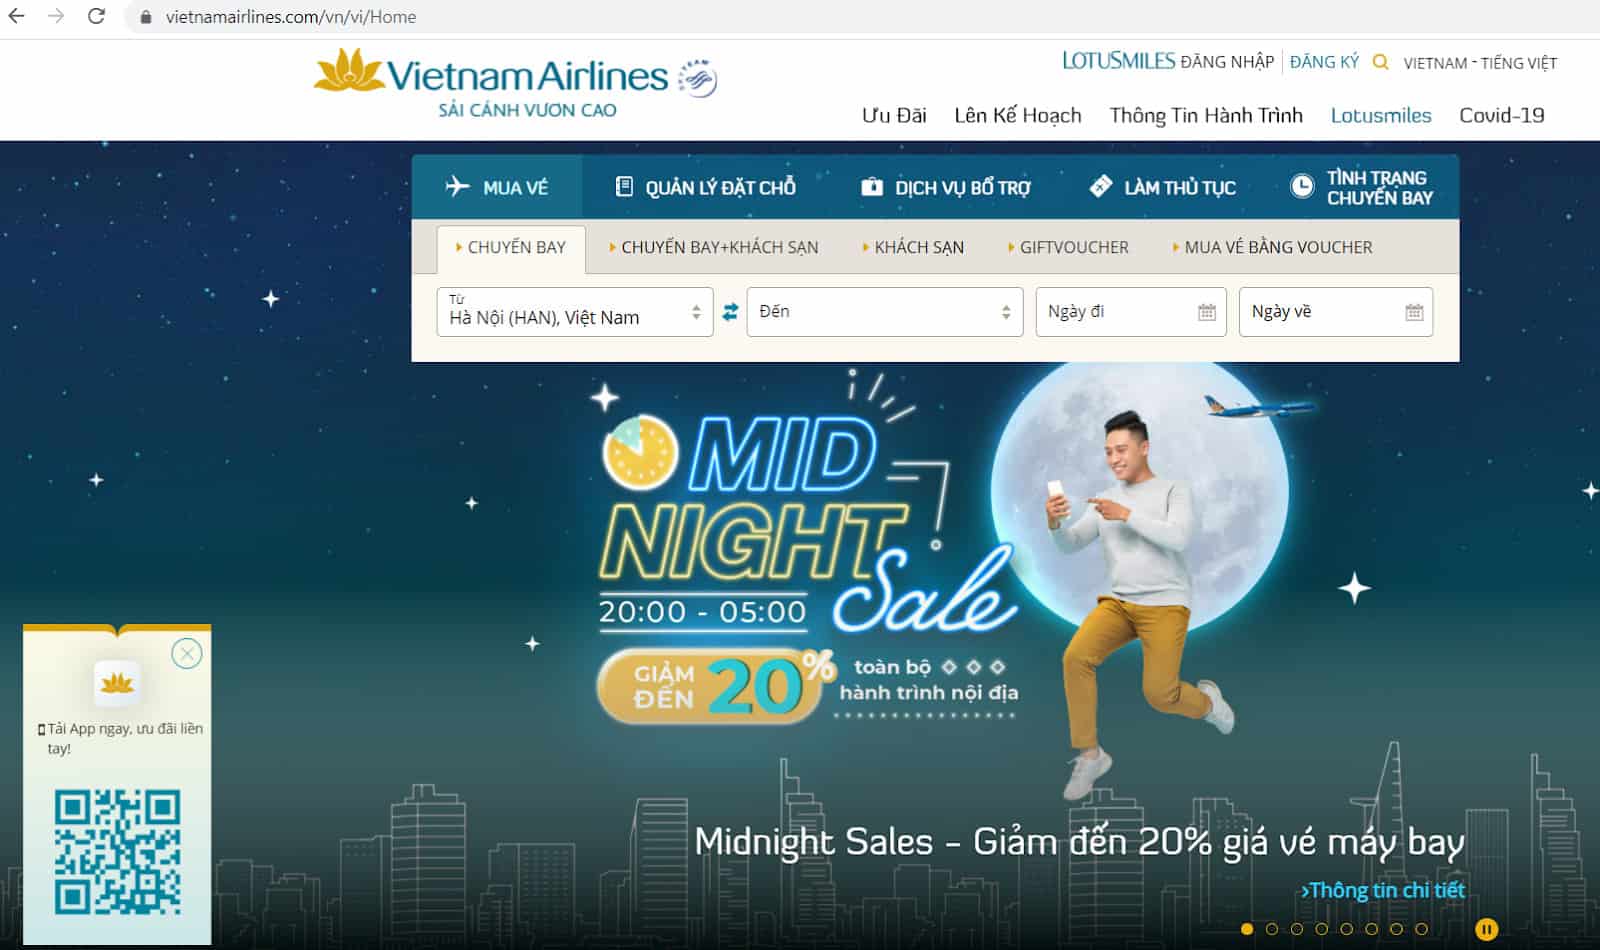 Hướng dẫn hoàn đổi vé Vietnam Airlines tự động - Truy cập website 3